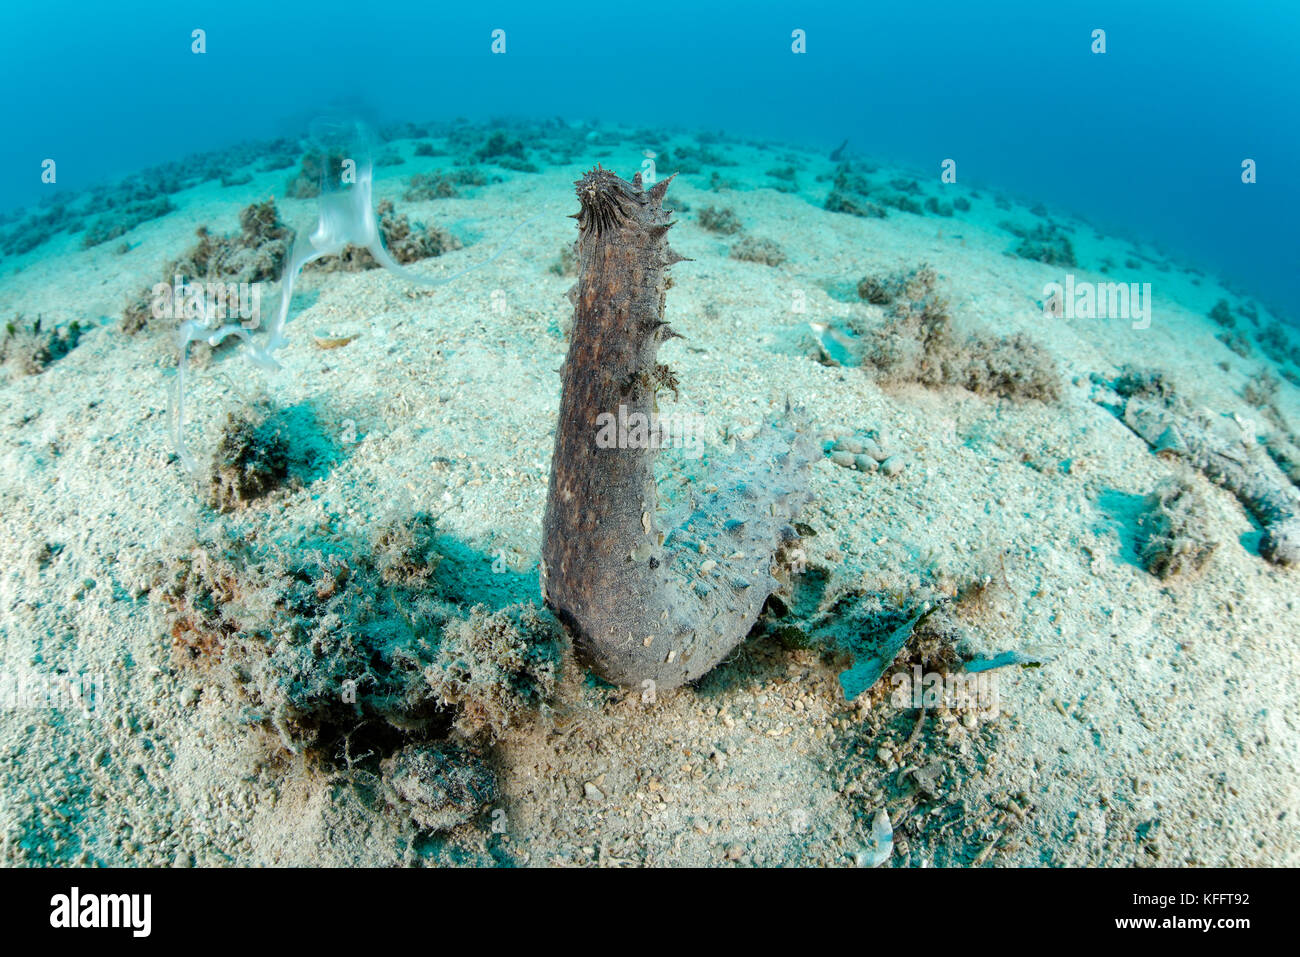 Holothuria tubulosa, tubolare cetriolo marittimo, durante la deposizione delle uova, mare adriatico, mare mediterraneo, Biograd, DALMAZIA, CROAZIA Foto Stock